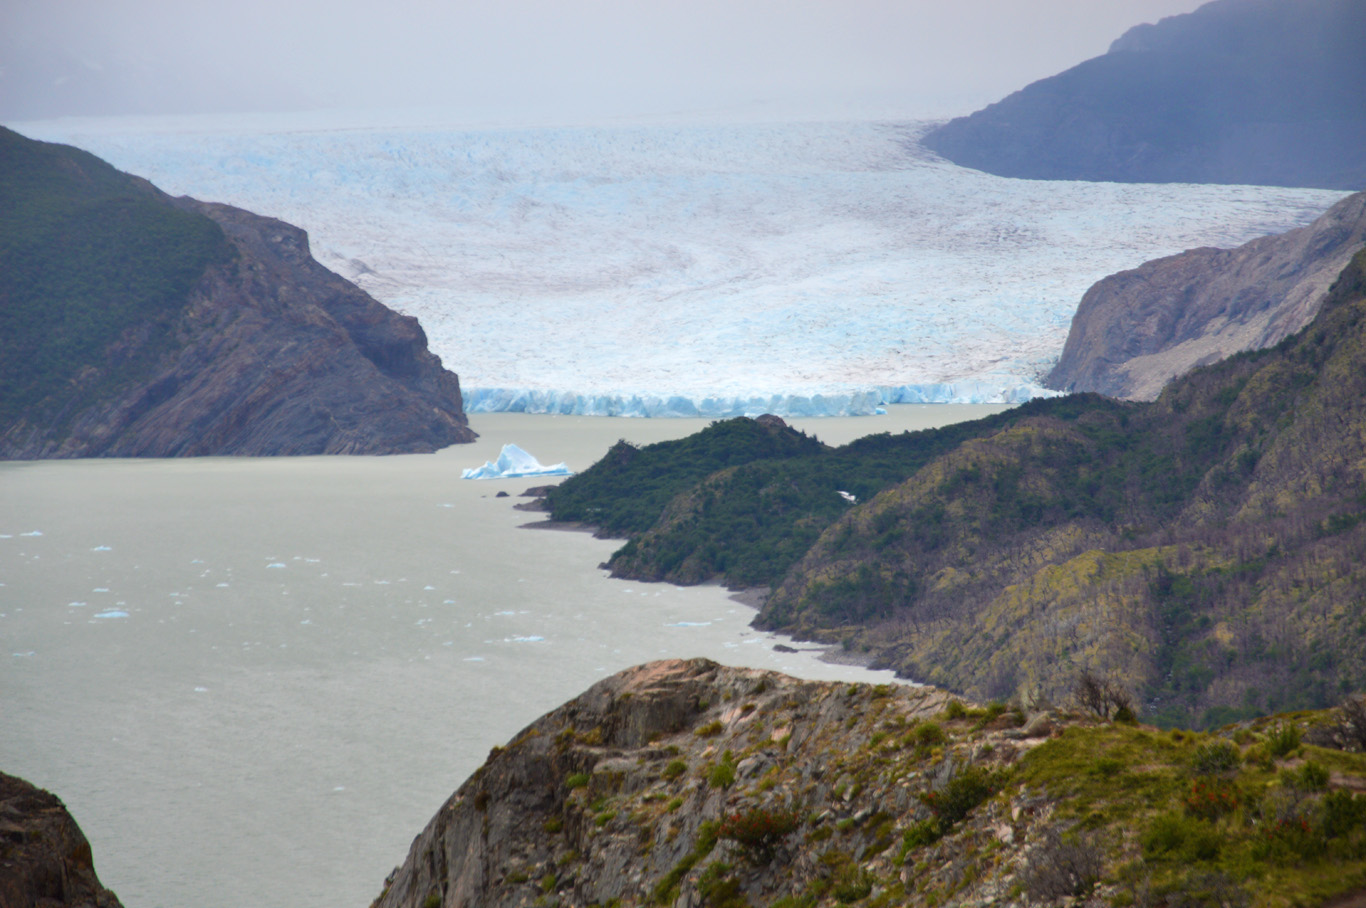   W trek Day 1 - Perito Moreno Glacier    more info  